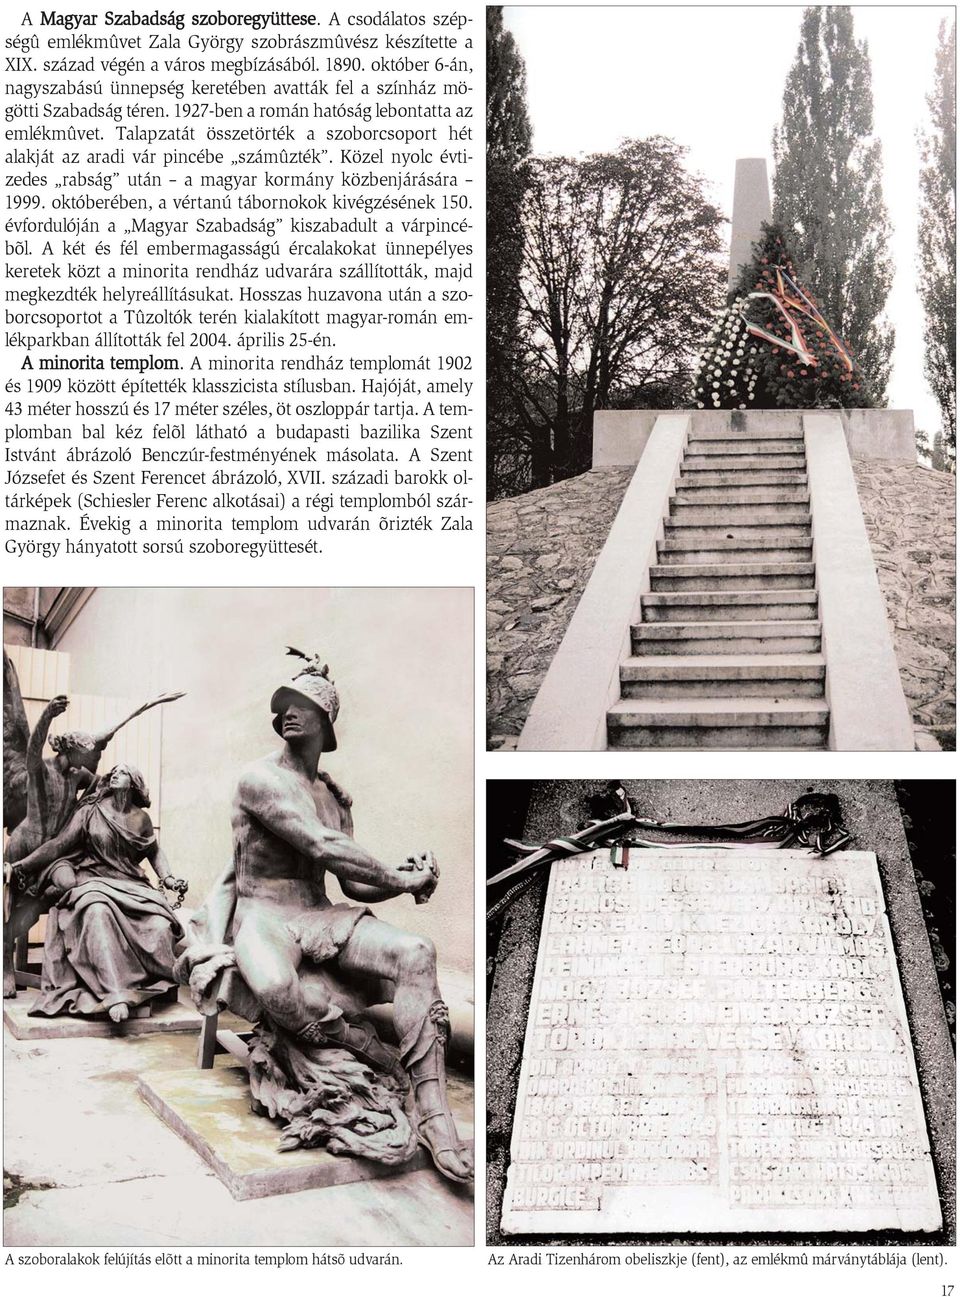 Talapzatát összetörték a szoborcsoport hét alakját az aradi vár pincébe számûzték. Közel nyolc évtizedes rabság után a magyar kormány közbenjárására 1999.